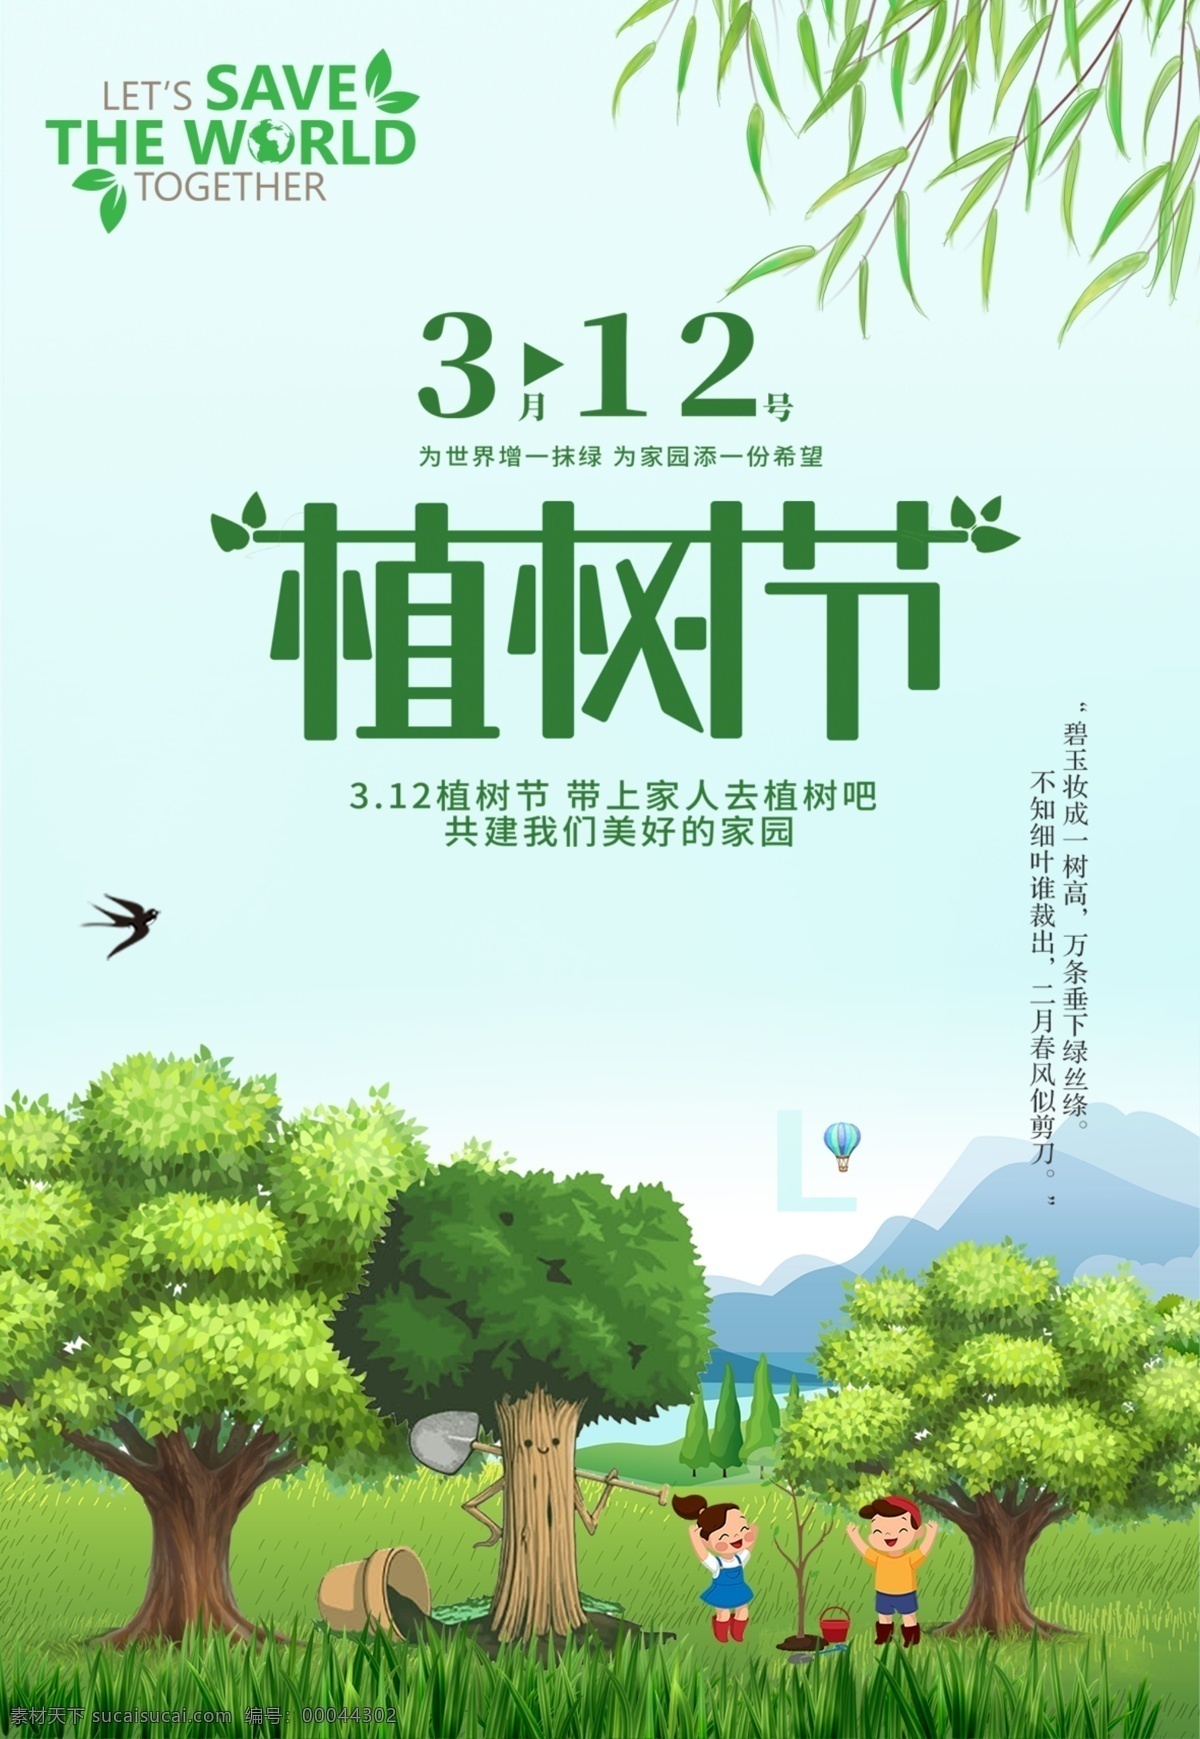 植树节 环保 公益 海报 节约 资源 绿色 psd素材 清新 18年植树节 节约资源 3月12日 绿化地球